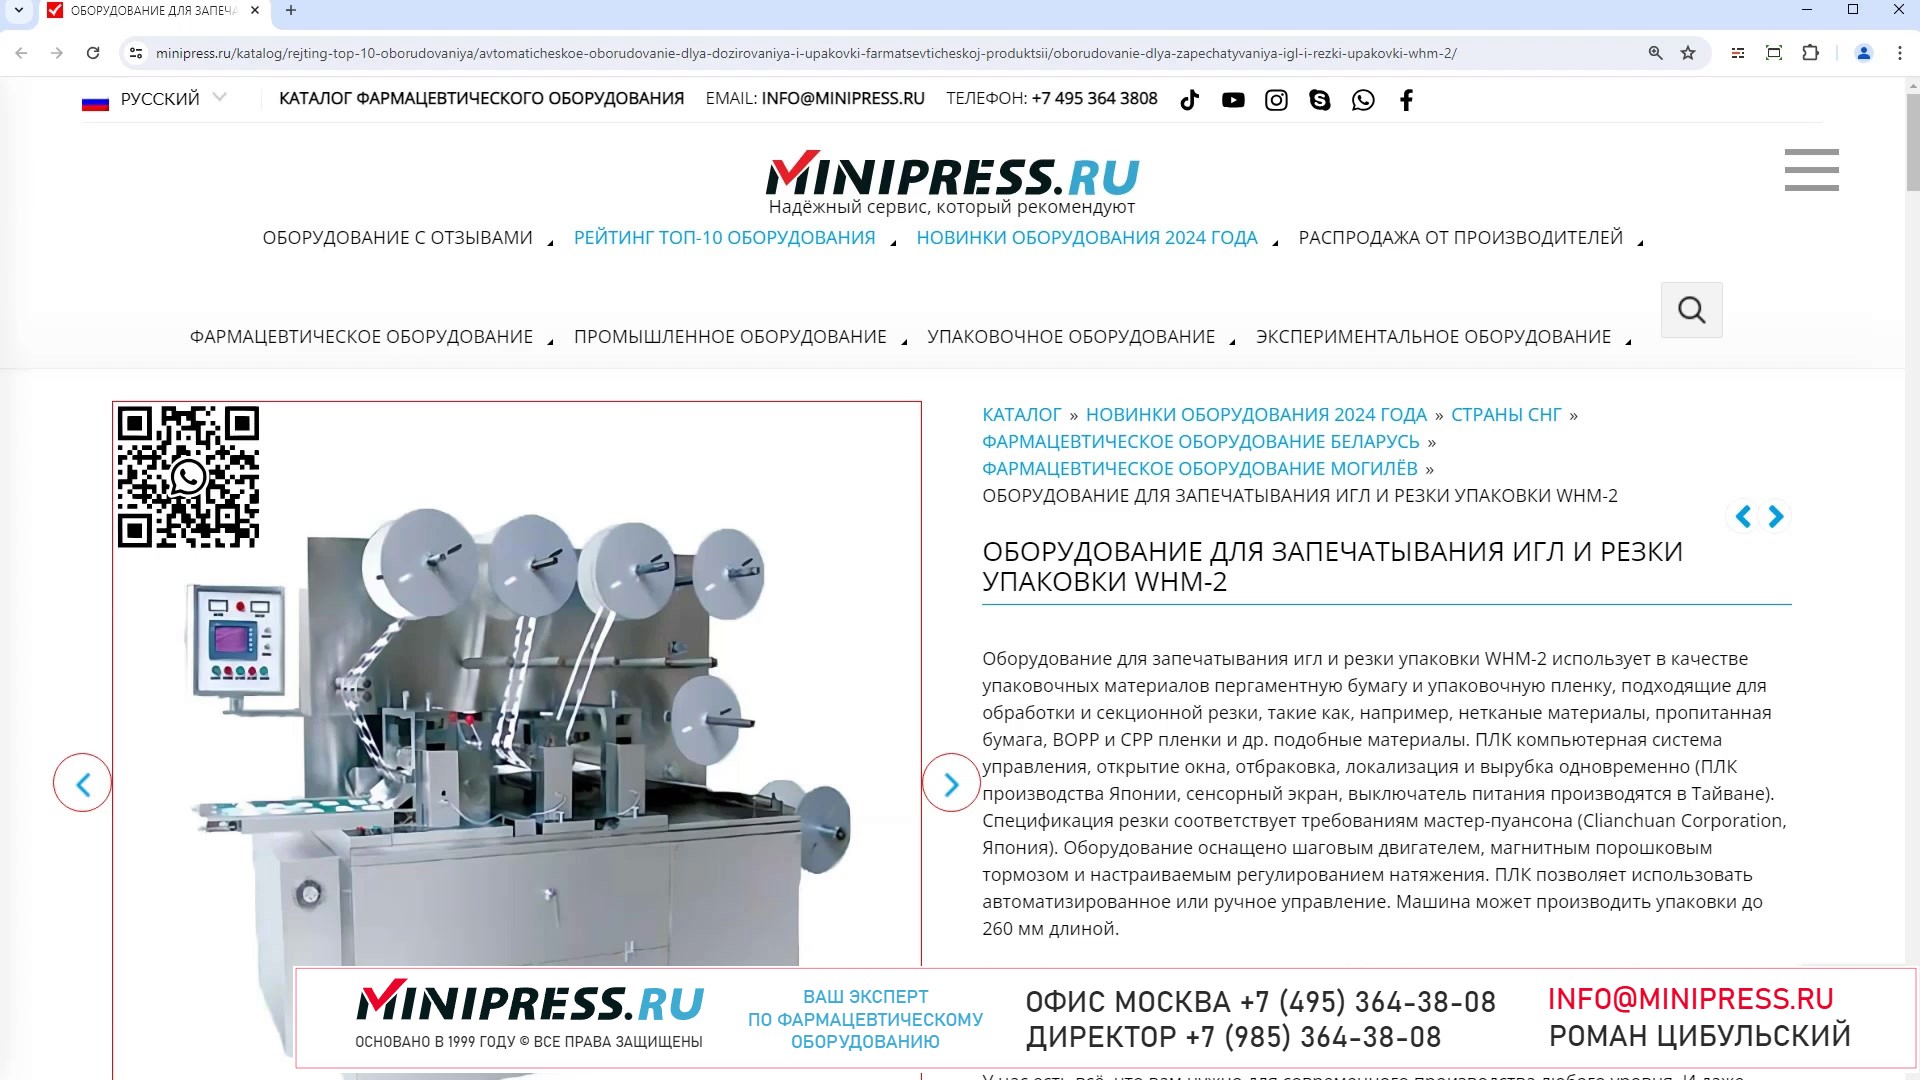 Minipress.ru Оборудование для запечатывания игл и резки упаковки WHM-2